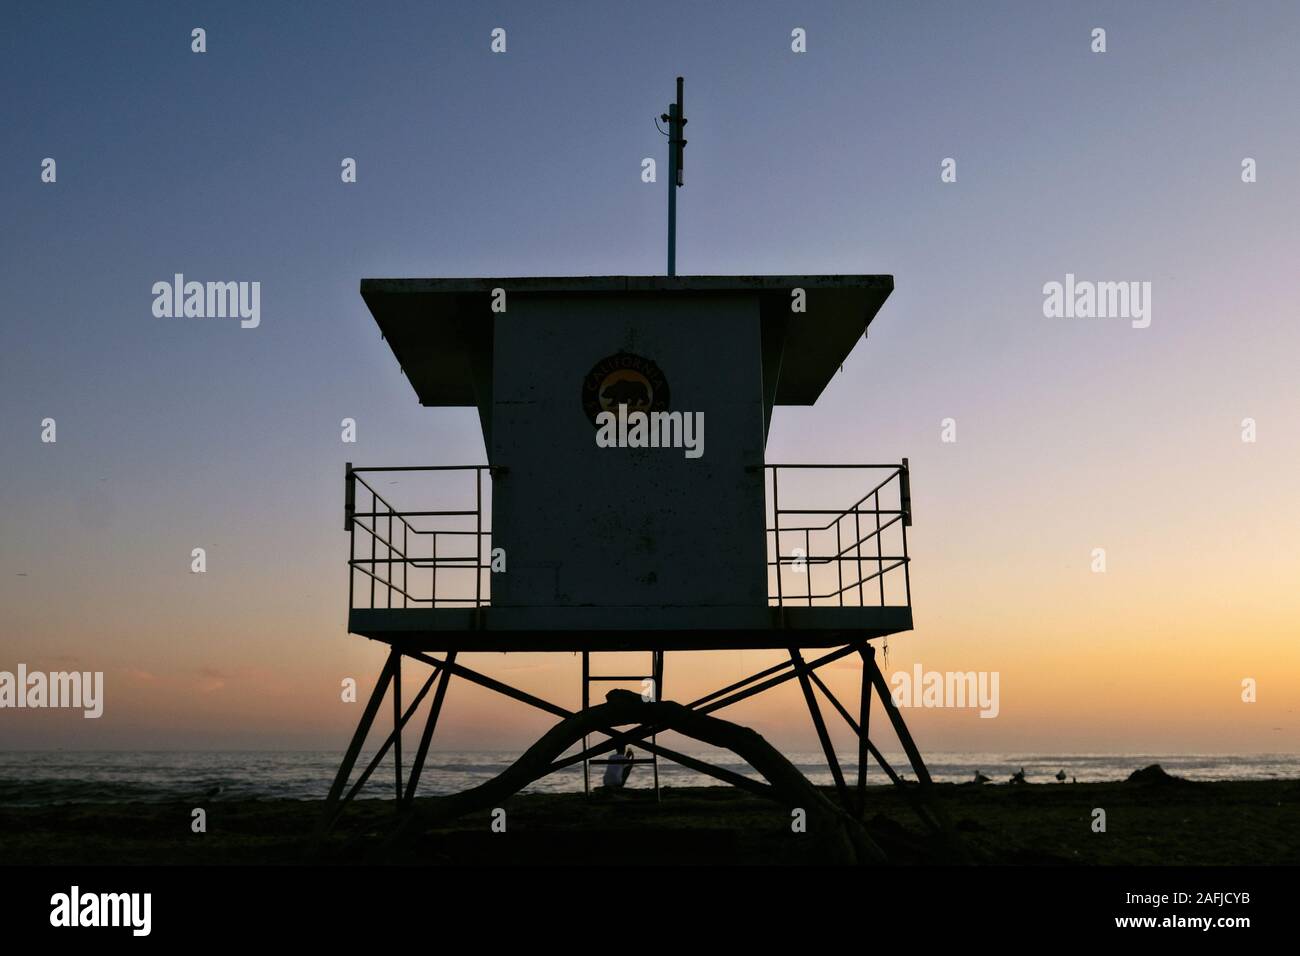 Sunset at Natural Bridges State Beach with lifeguard tower, Santa Cruz, California, USA Stock Photo